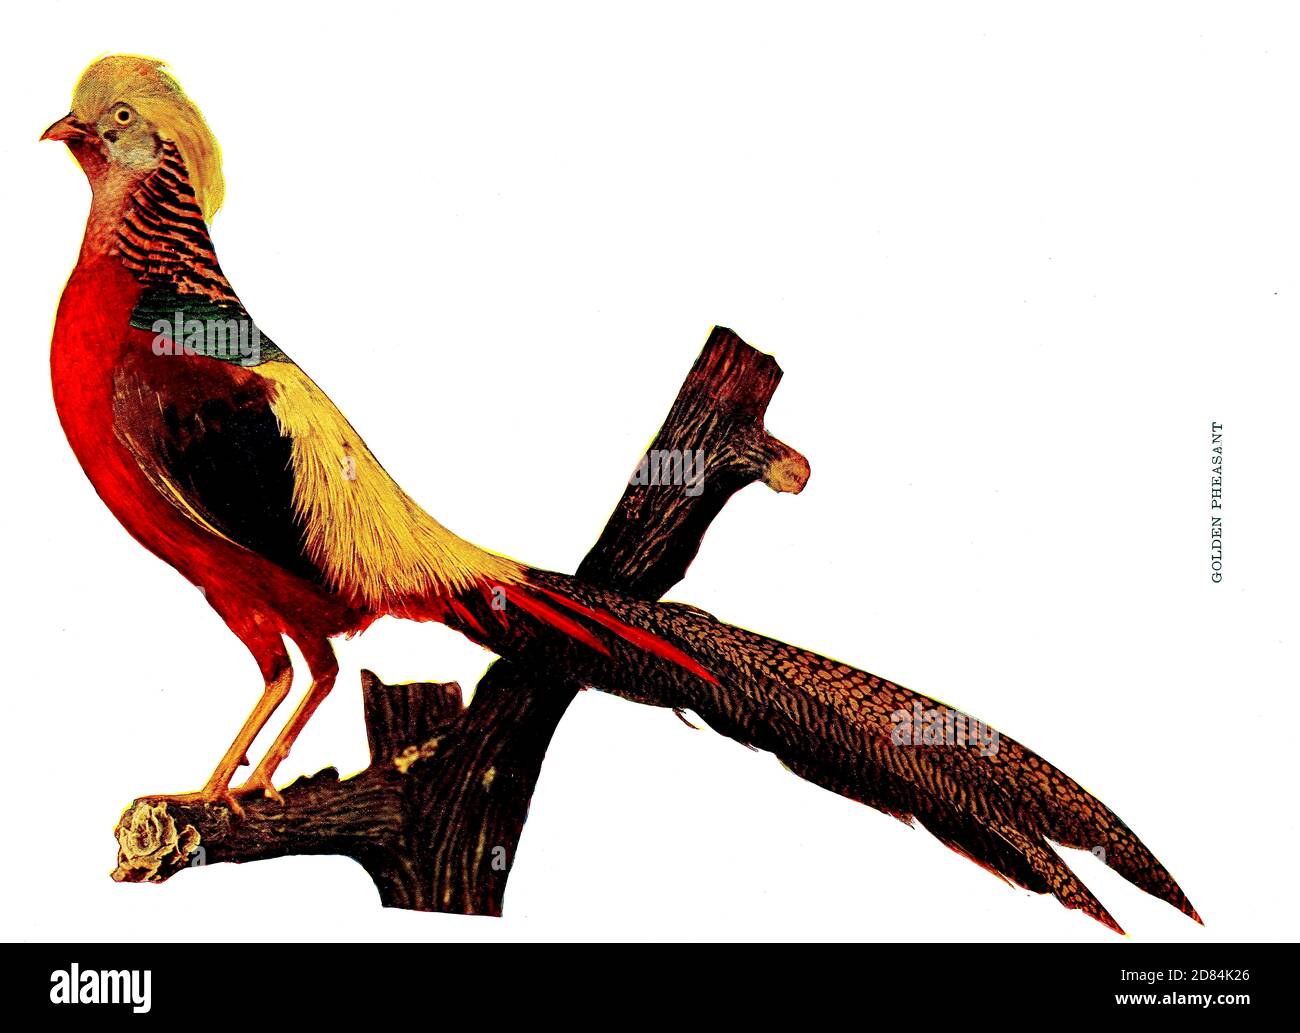 El faisán dorado (Chrysolophus pictus), también conocido como el faisán chino, y el faisán arcoiris, es un ave de gamebird del orden Galliformes (aves galináceas) y la familia Phasianidae (faisanes). Es nativa de los bosques en las zonas montañosas de China occidental, de aves : ilustrado por la fotografía en color : una serie mensual. Conocimiento de la vida de las aves Vol 1 no 1 Enero 1897 Foto de stock